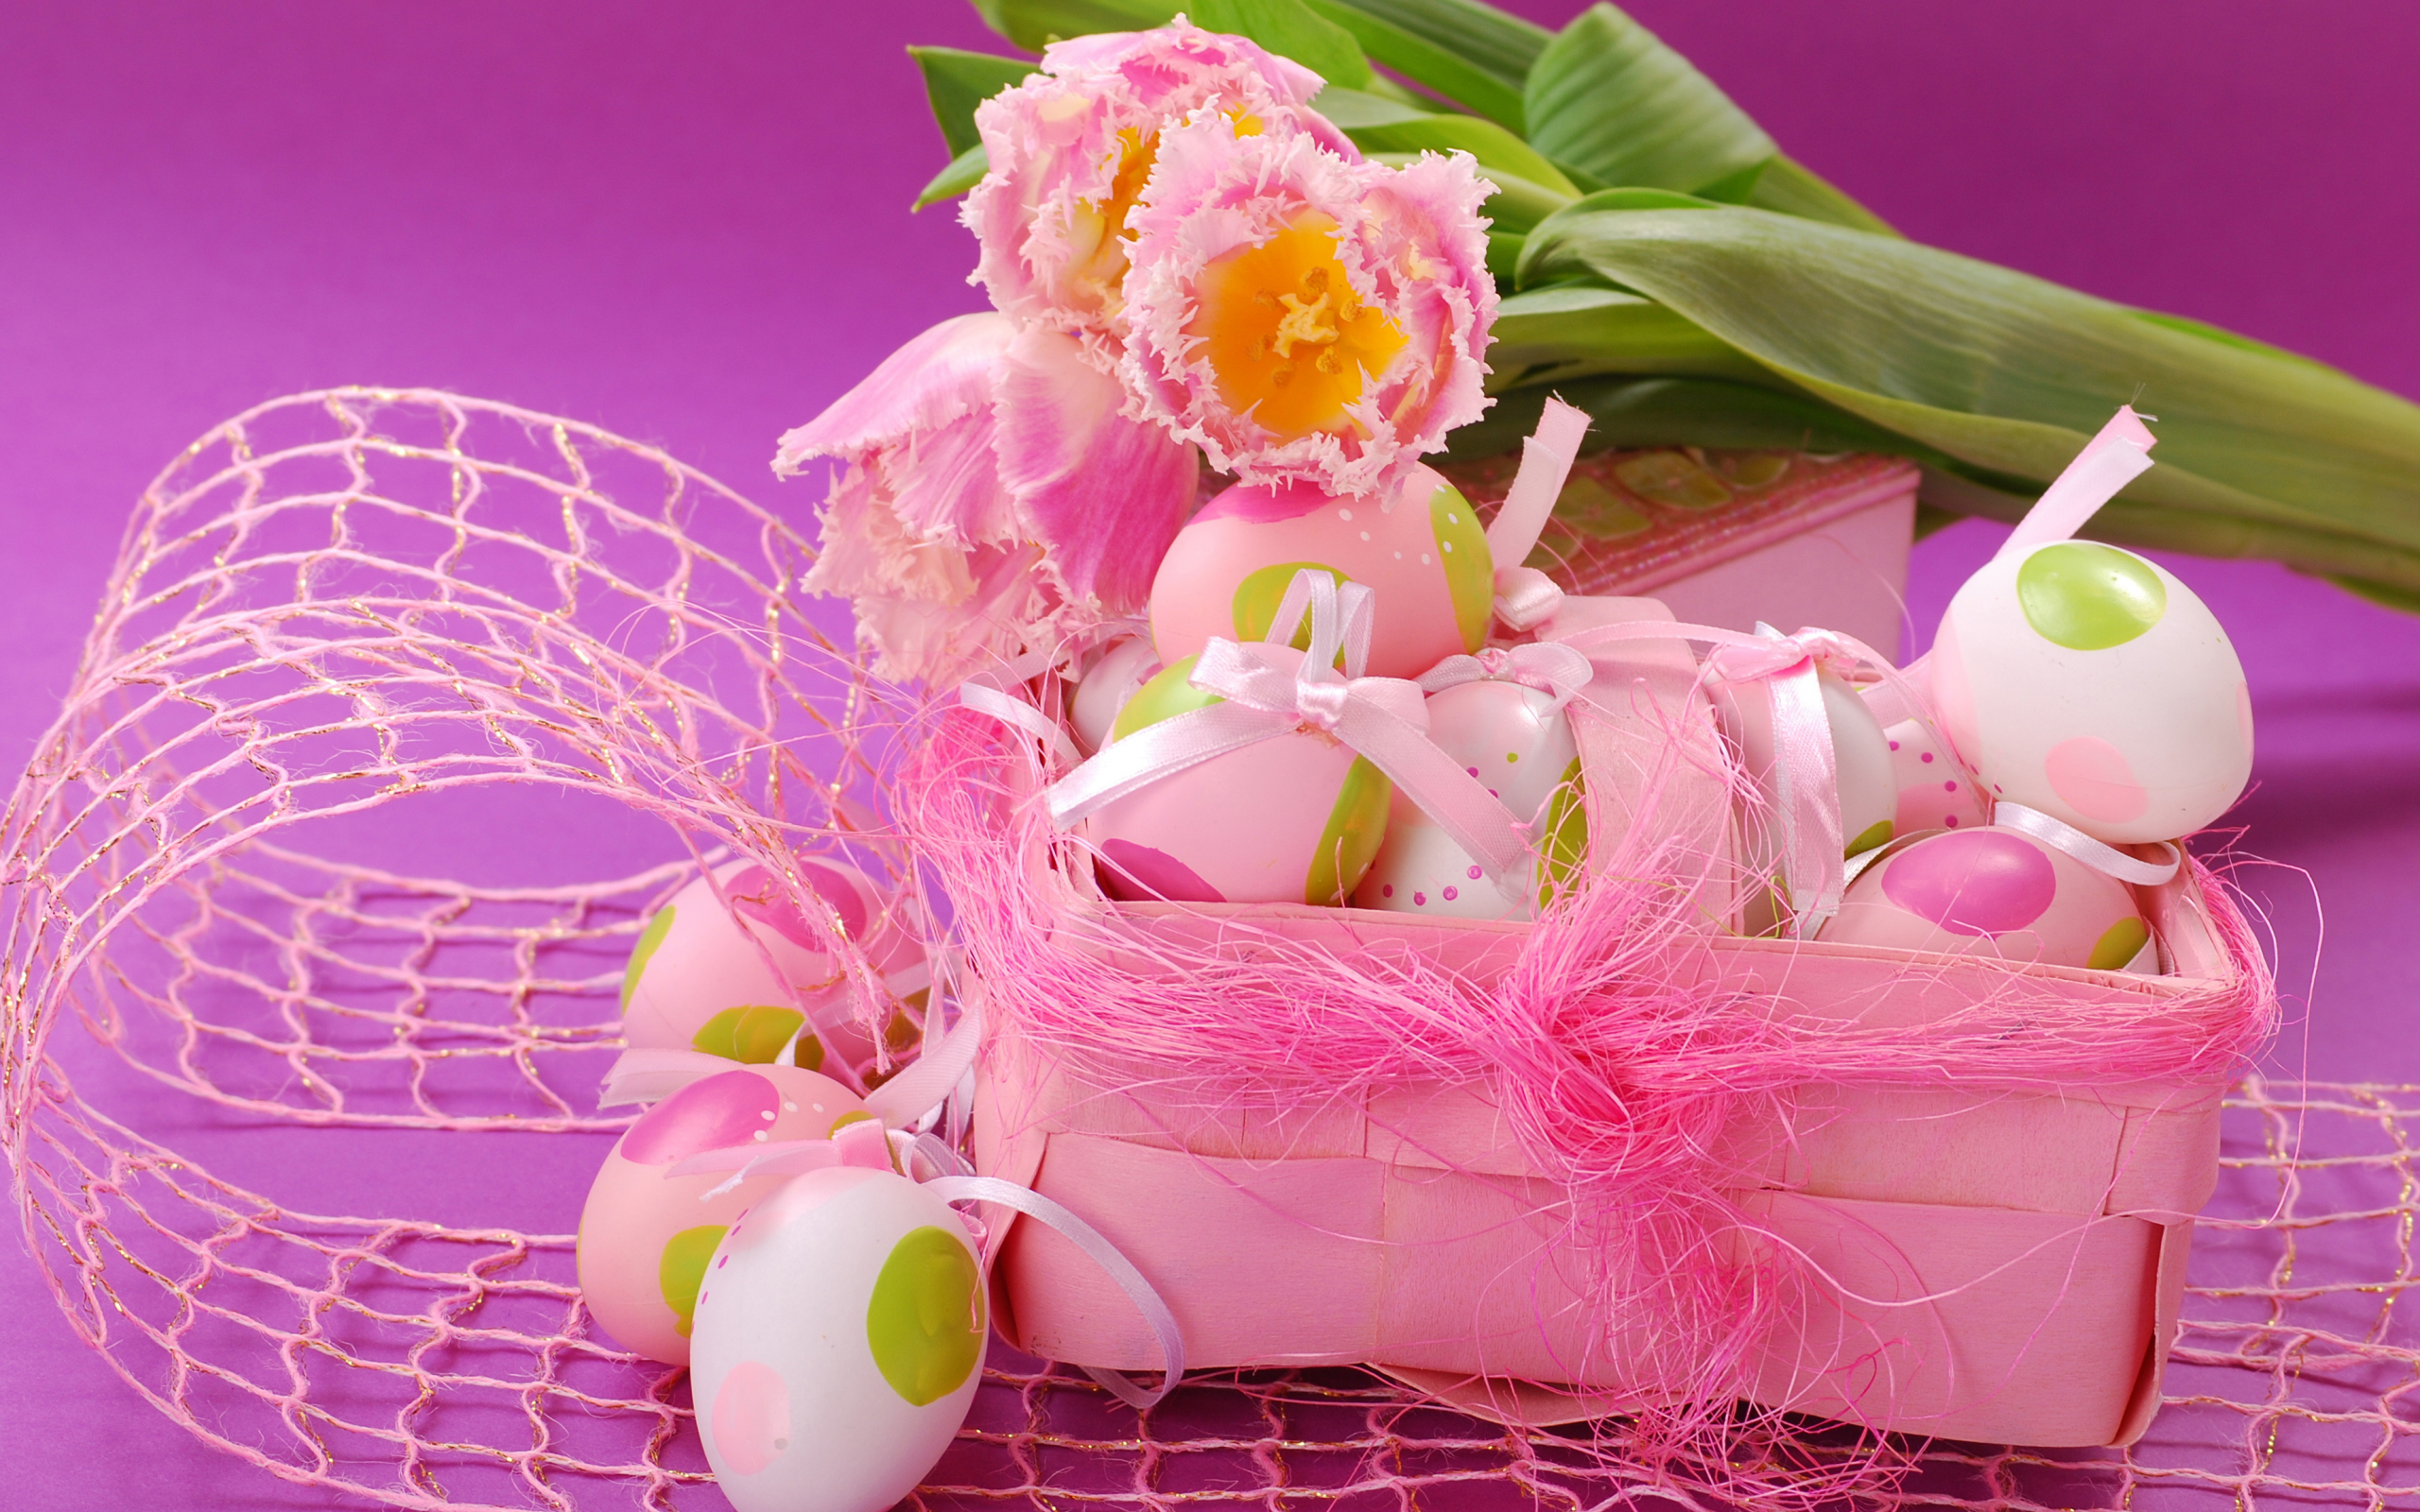 розовый, пасха, flowers, тюльпаны, весна, яйца, eggs, easter, spring